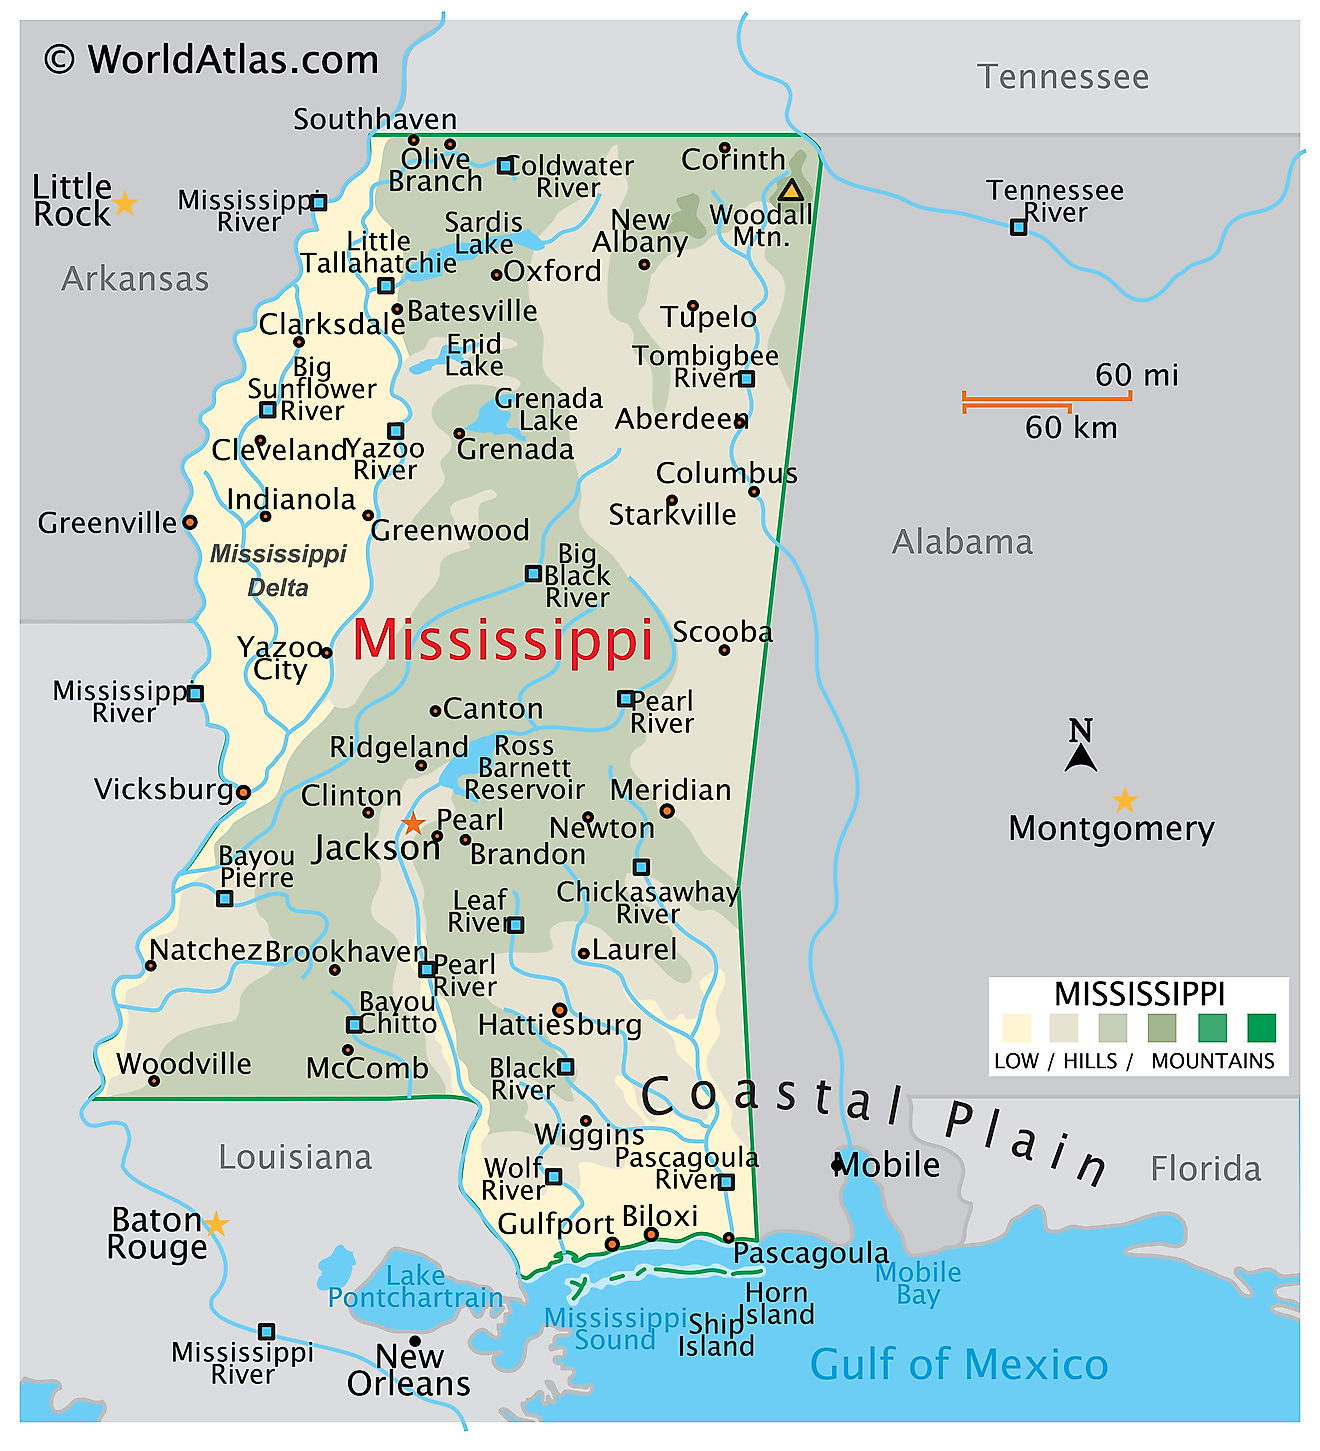 Mapa físico de Mississippi. Muestra las características físicas de Mississippi, incluidas sus cadenas montañosas, los principales ríos, lagos y el Golfo de México.